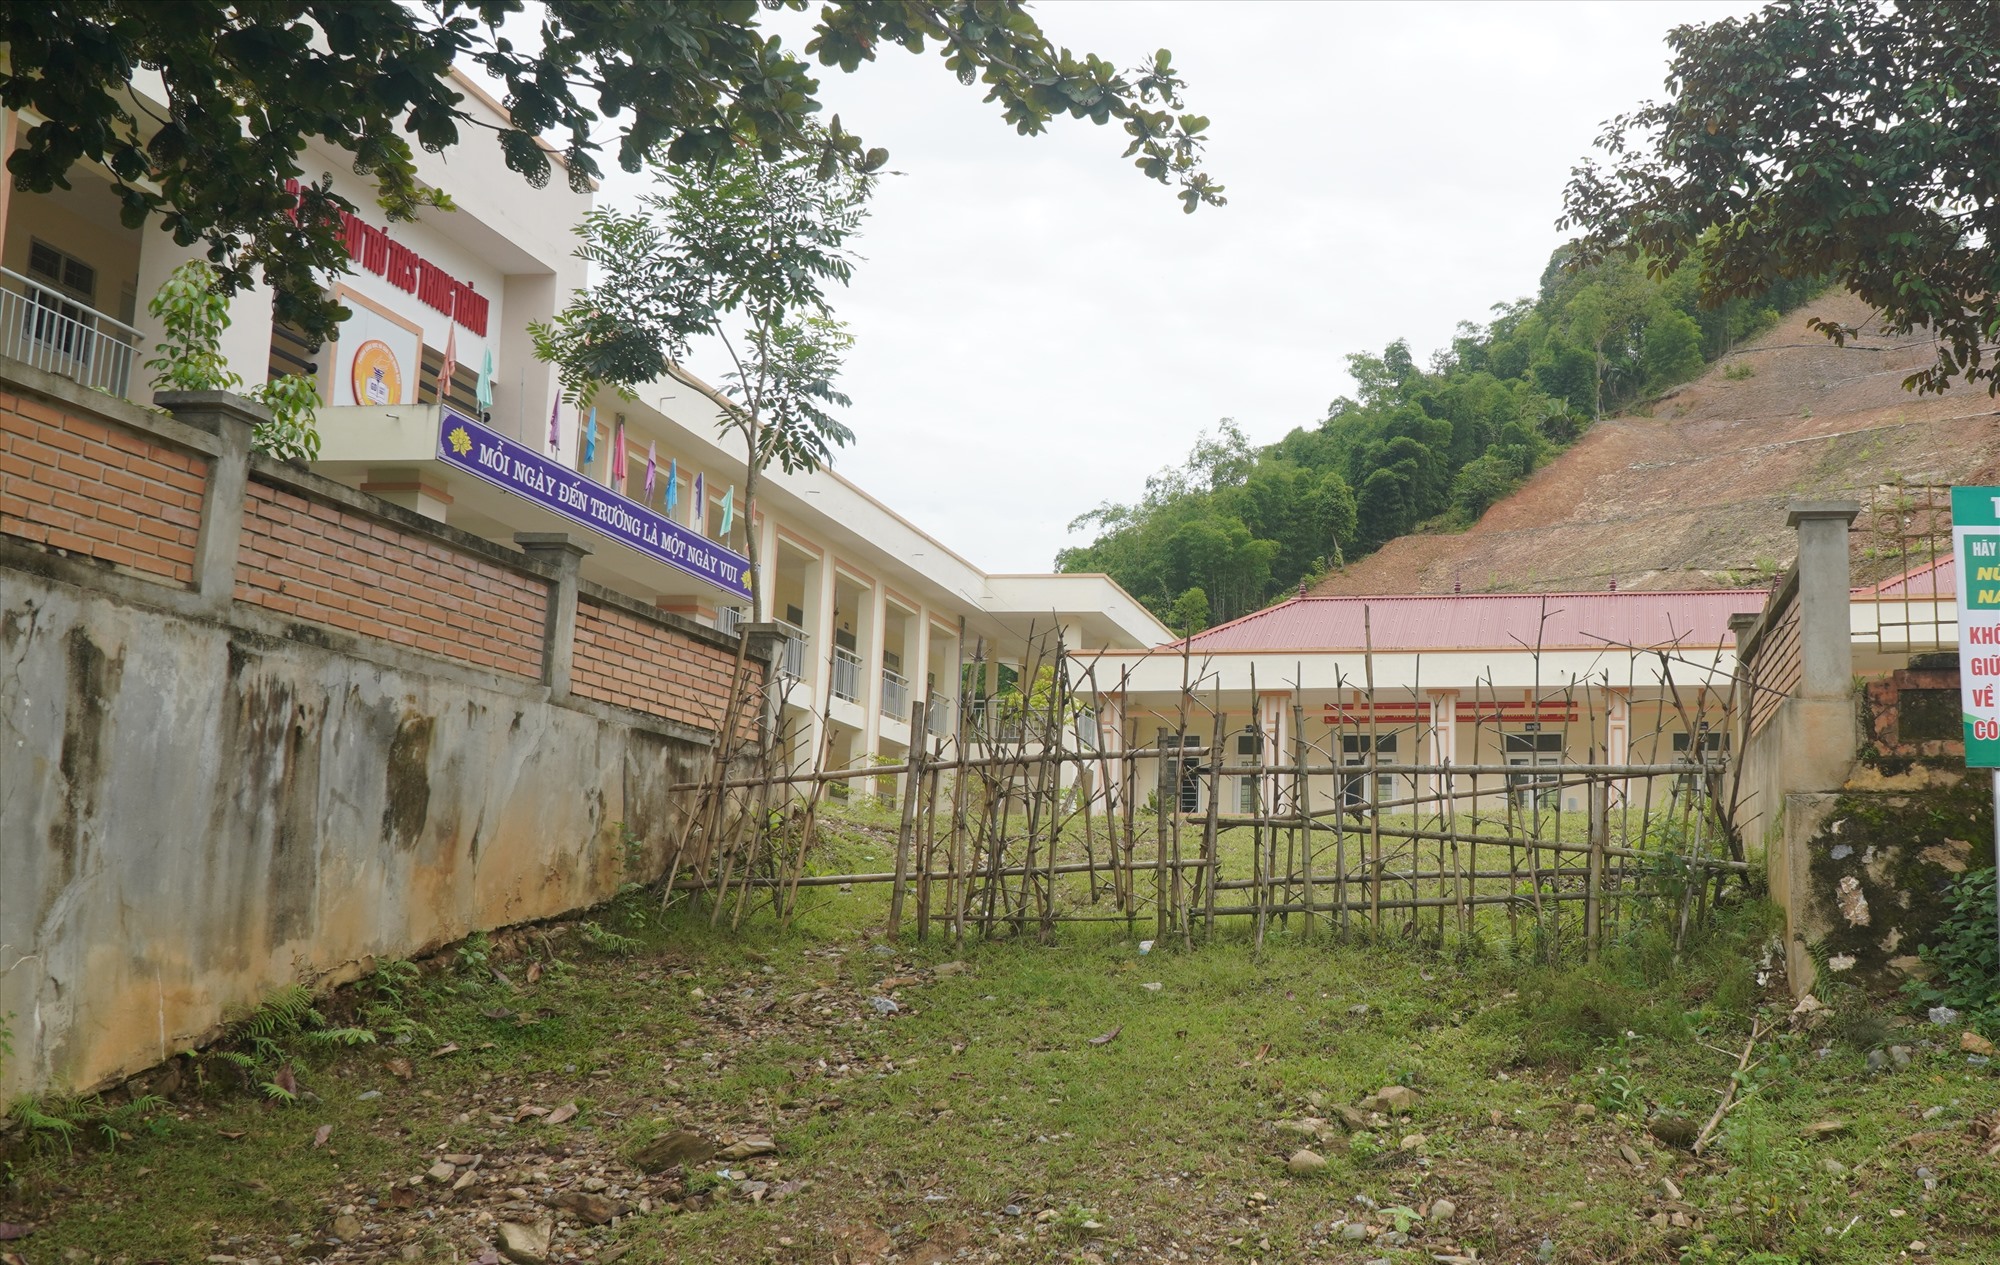 Theo đại diện lãnh đạo UBND xã Trung Thành, huyện Quan Hóa cho biết, do trường đối diện với nguy cơ sạt lở, 2 năm qua hơn 200 học sinh và cán bộ giáo viên của Trường PTDTBT - THCS Trung Thành phải đi học nhờ ở Trường tiểu học. Trong khi đó, Trường Tiểu học Trung Thành chỉ có 7 phòng học, nên xảy ra tình trạng thiếu phòng học. Ảnh: Quách Du